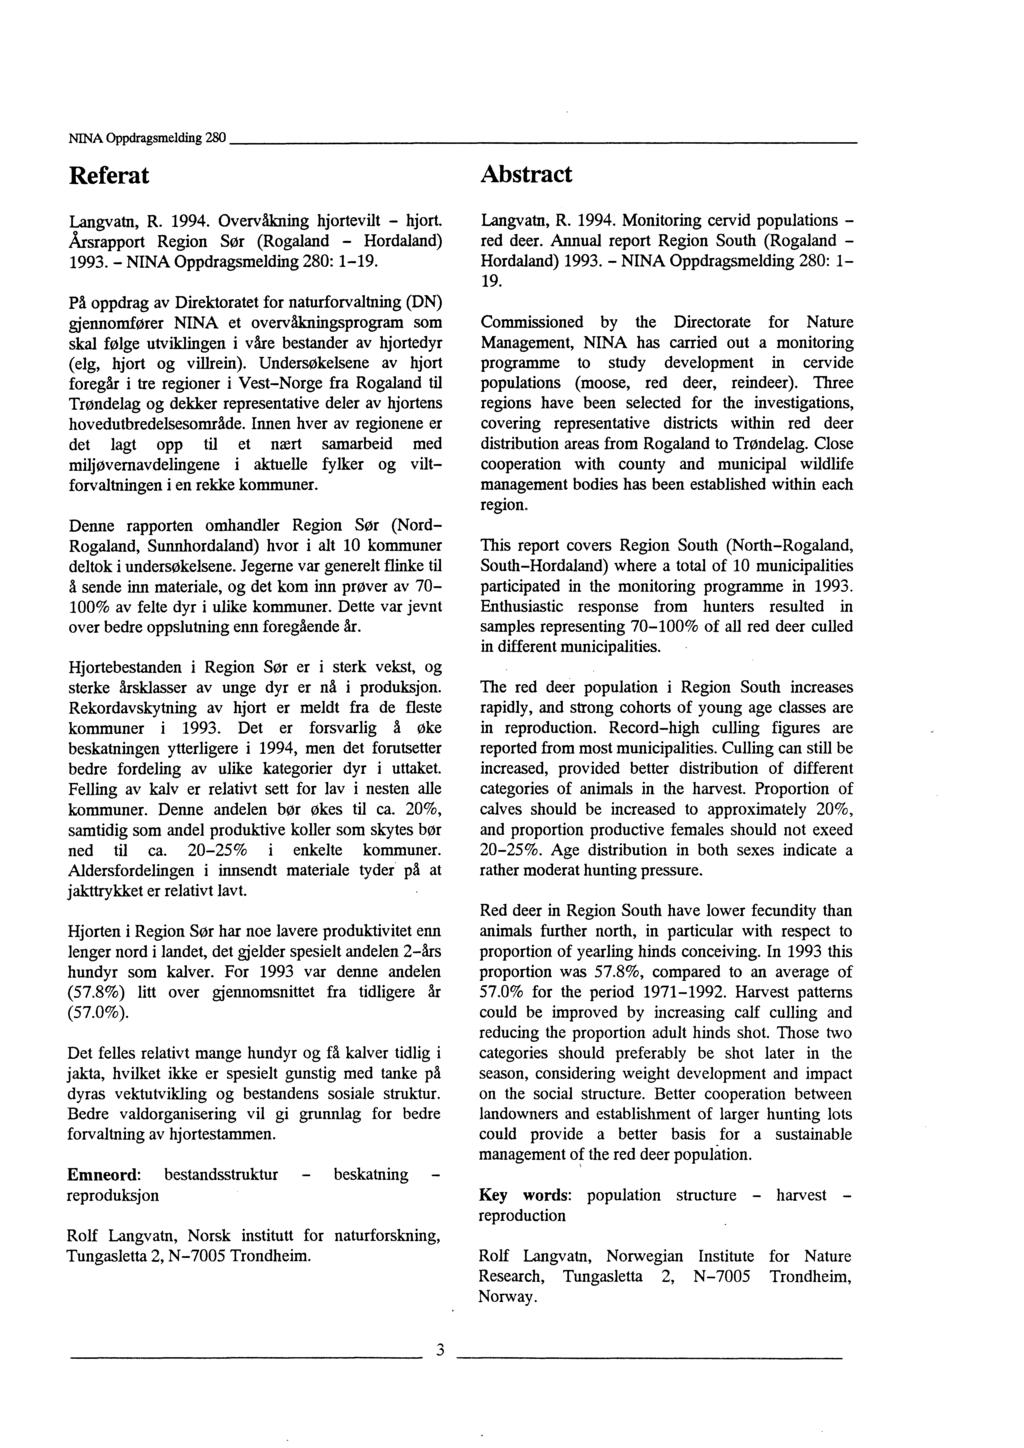 Referat Langvatn, R. 1994. Overvåkning hjortevilt - hjort. Årsrapport Region Sør (Rogaland - Hordaland) 1993. - NINA Oppdragsmelding 280: 1-19.